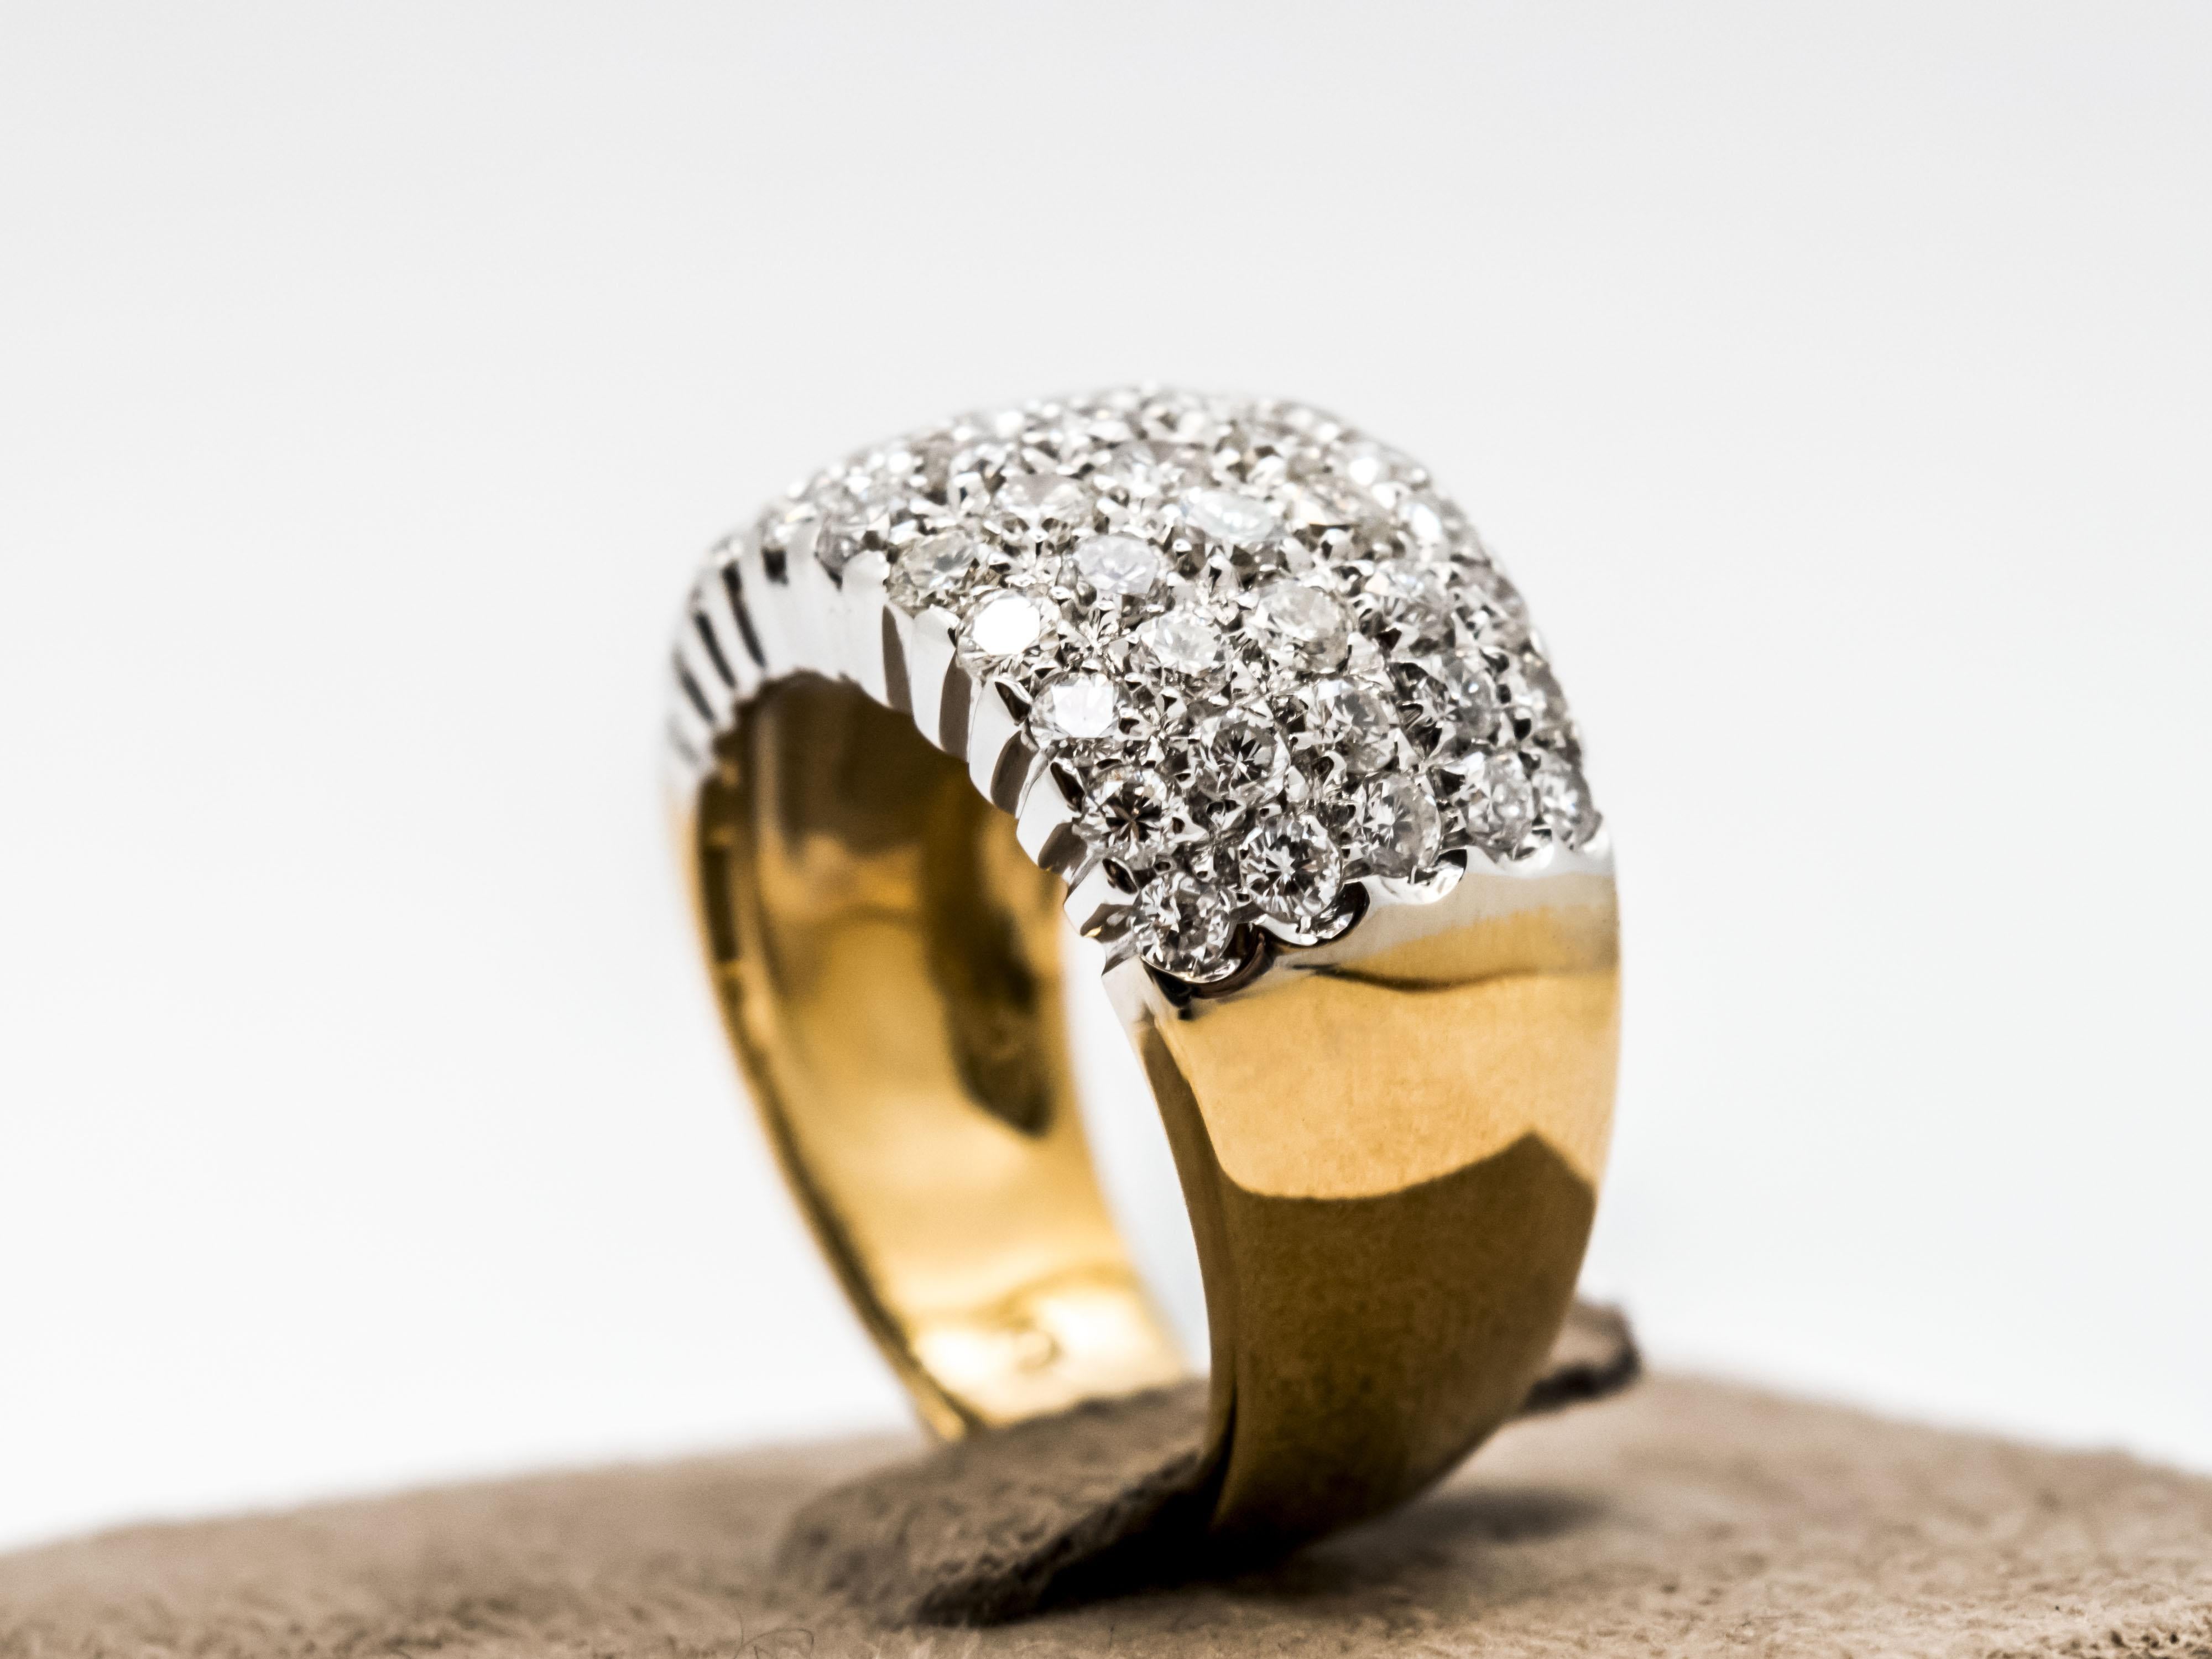 Un classico anello a fascia creato in oro 18 Kt, massiccio, dal peso di gr 8.65.
La fascia è in due colori di oro. La parte che supporta i diamanti è in oro bianco 18 Kt mentre la parte della fascia è in oro giallo 18 kt.
Questo dettaglio bicolore